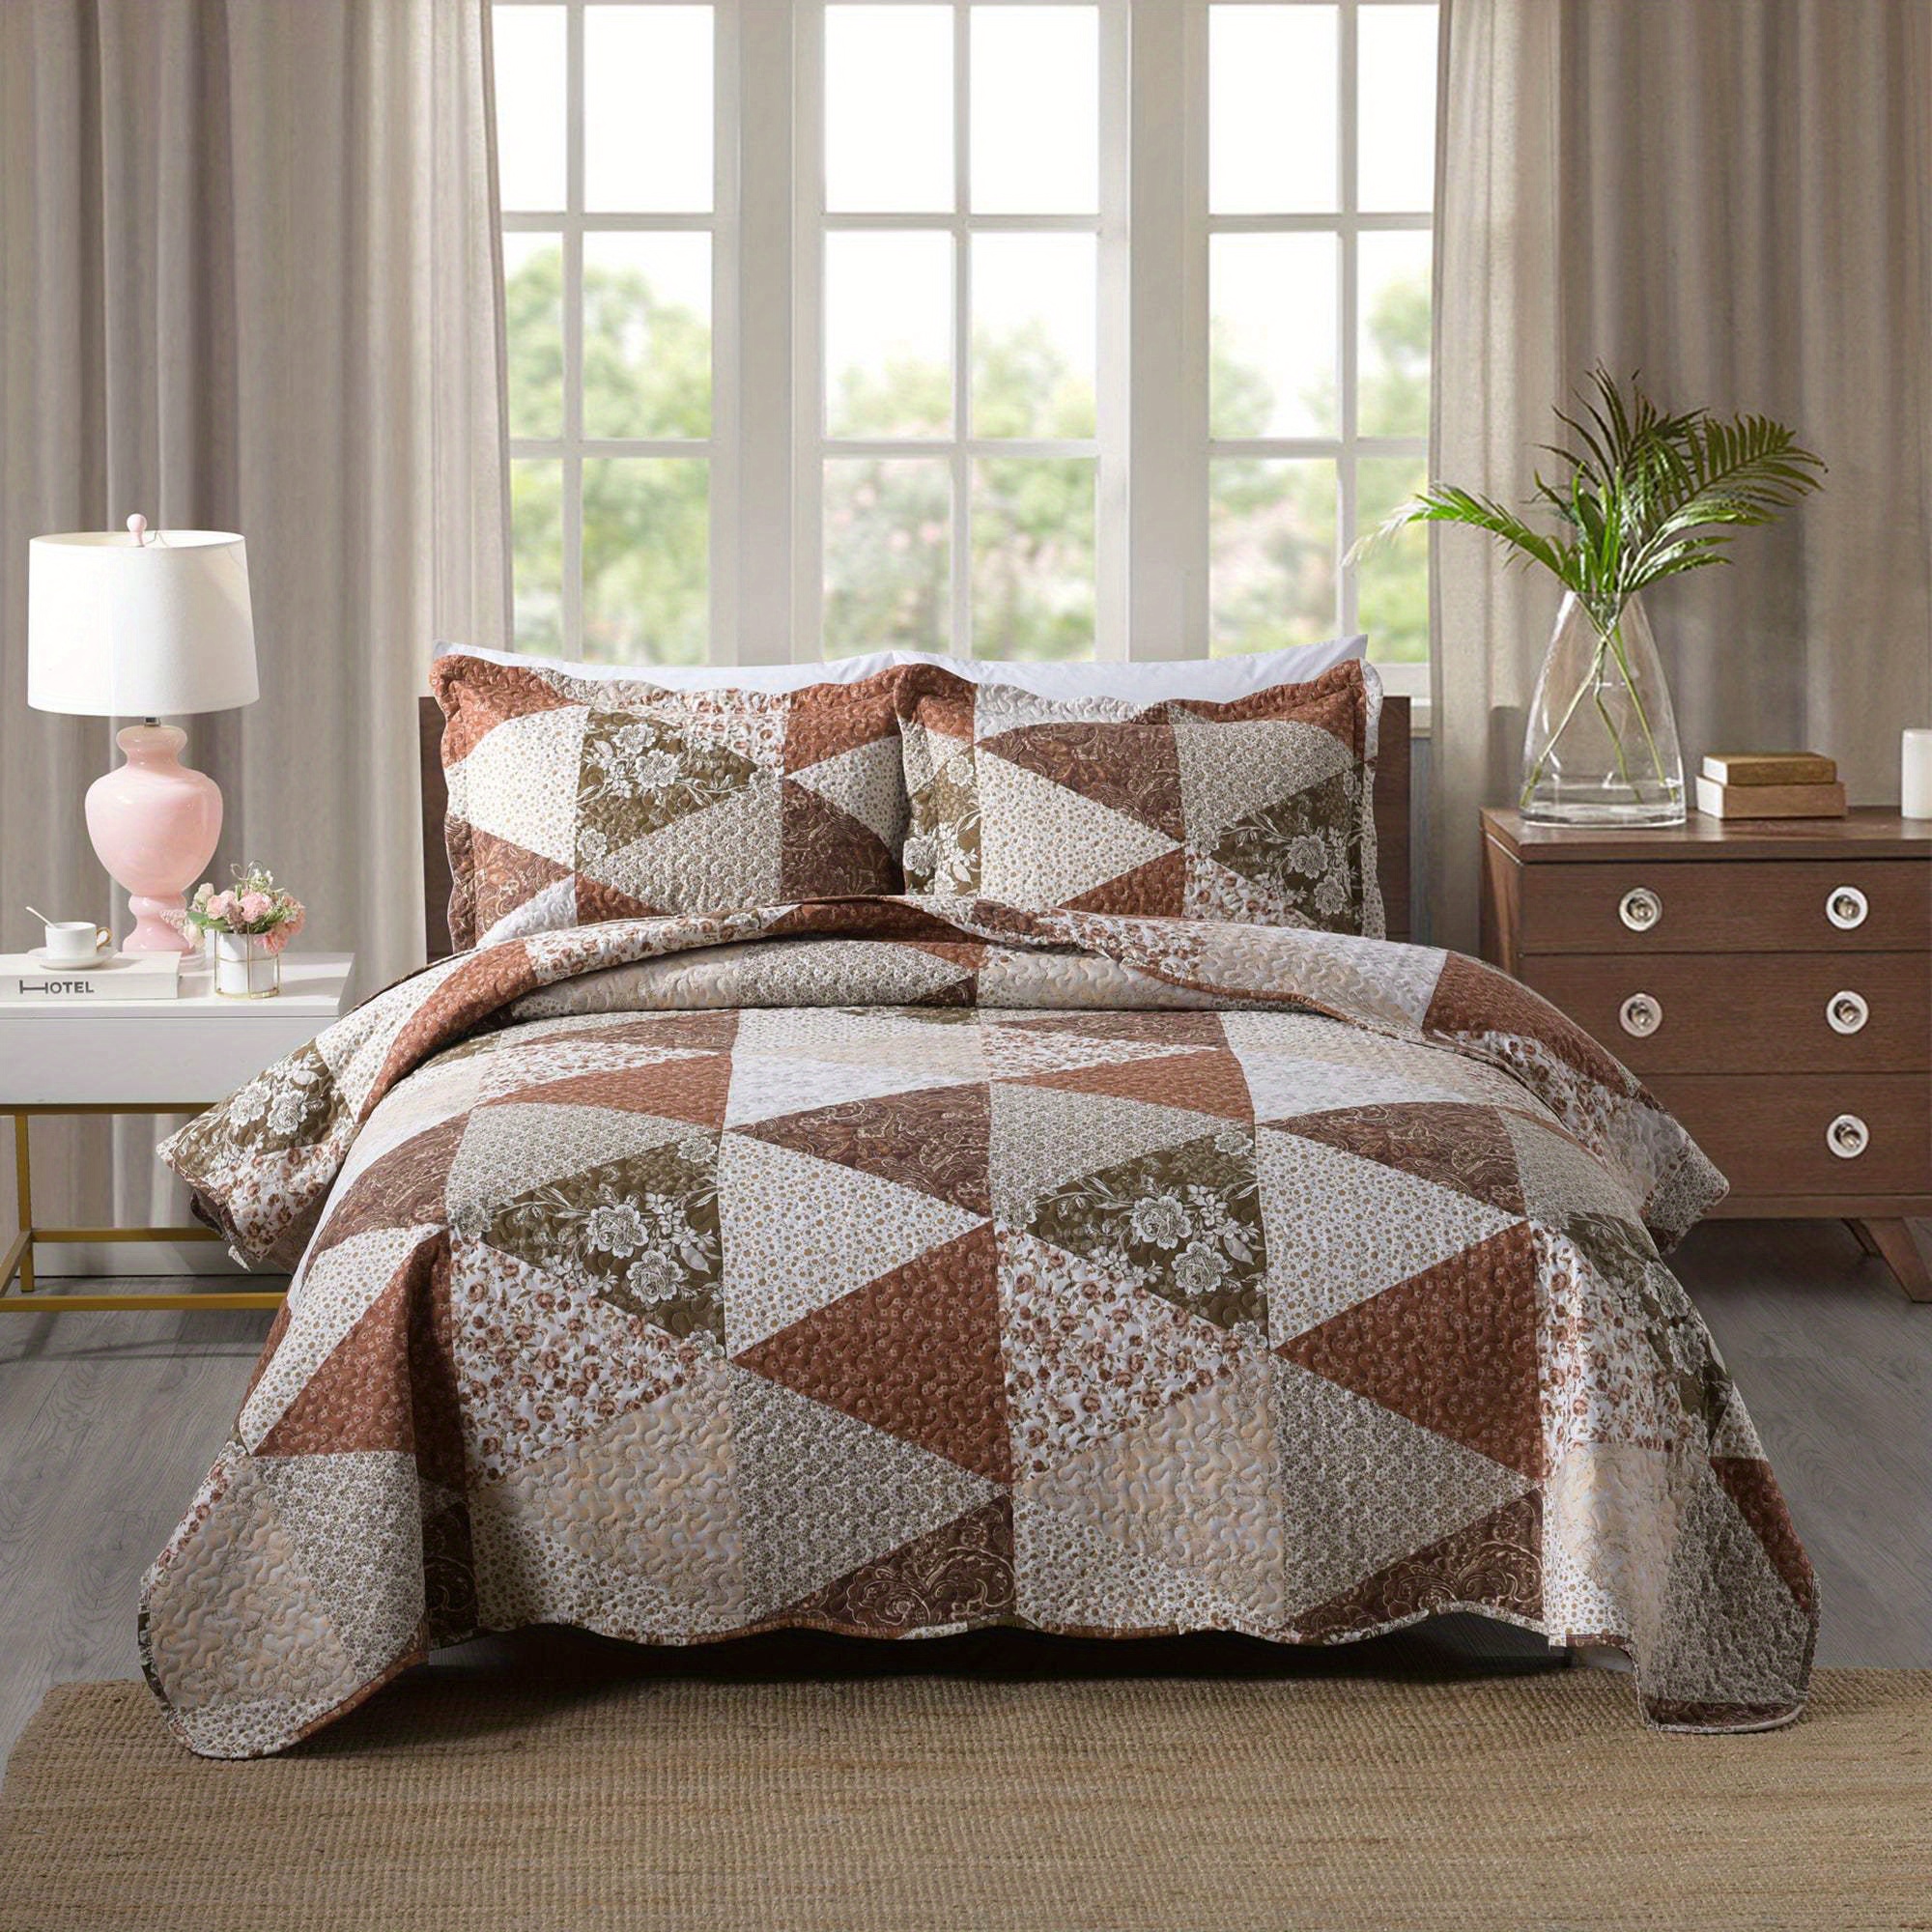 

3 Piece Lightweight Quilt Set Lightweight Bedspread Set